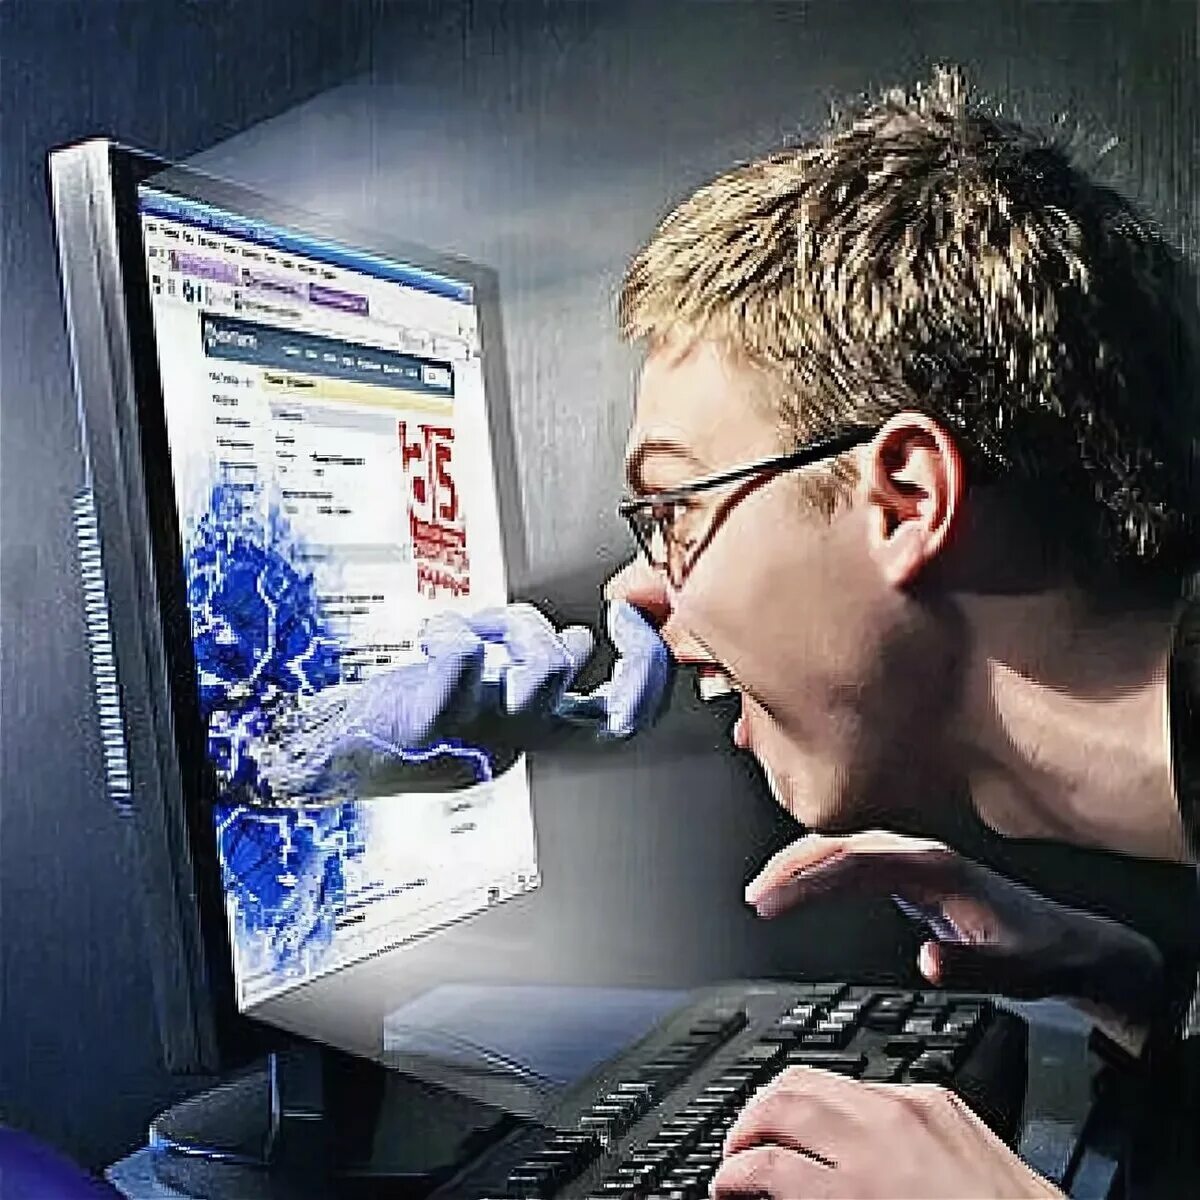 Пользователя в интернете можно. Человек перед компьютером. Компьютер и человек. Человек перед монитором. Человек за ПК.